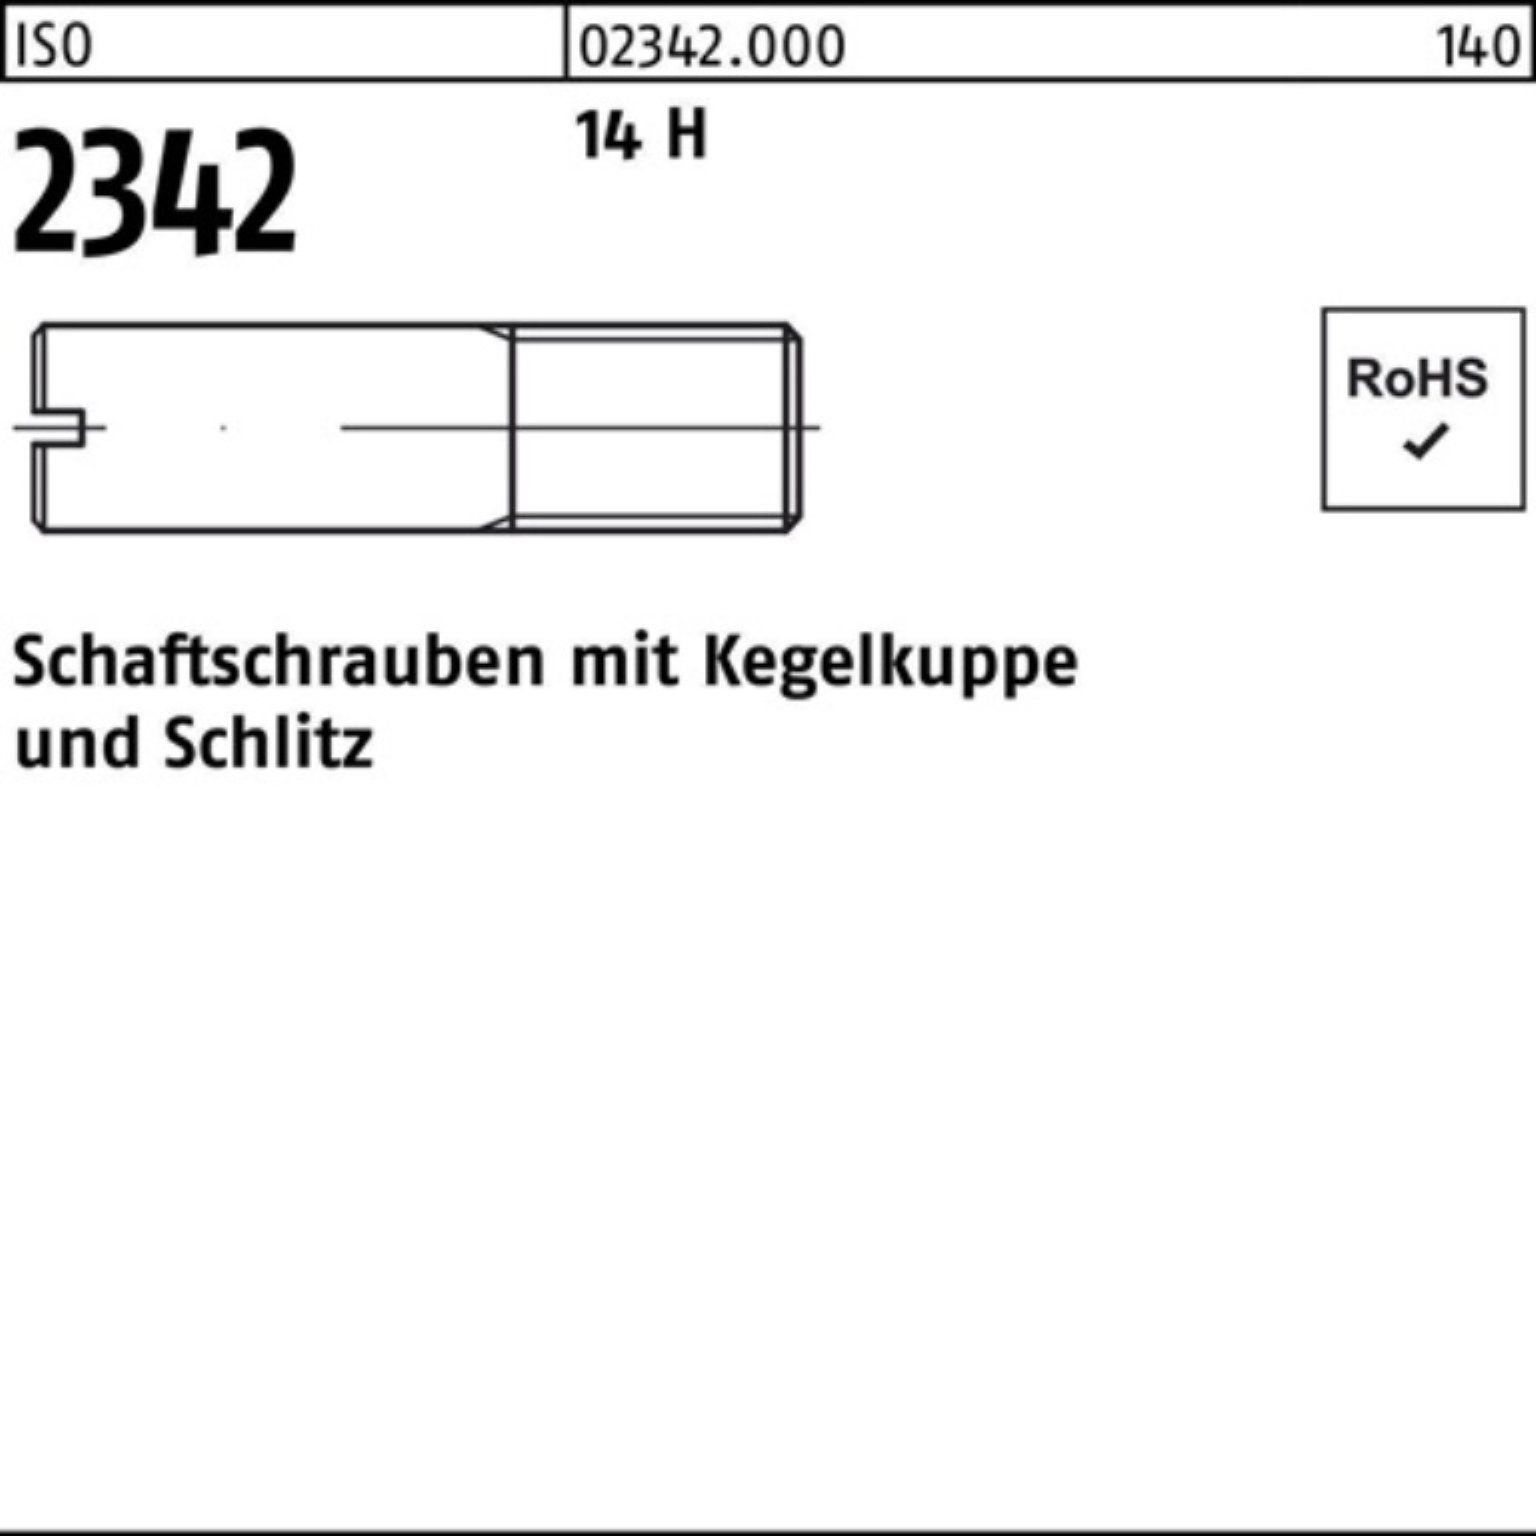 Reyher Schraube 100er M12x Kegelkuppe/Schlitz 2342 40 H Schaftschraube ISO Pack 50 14